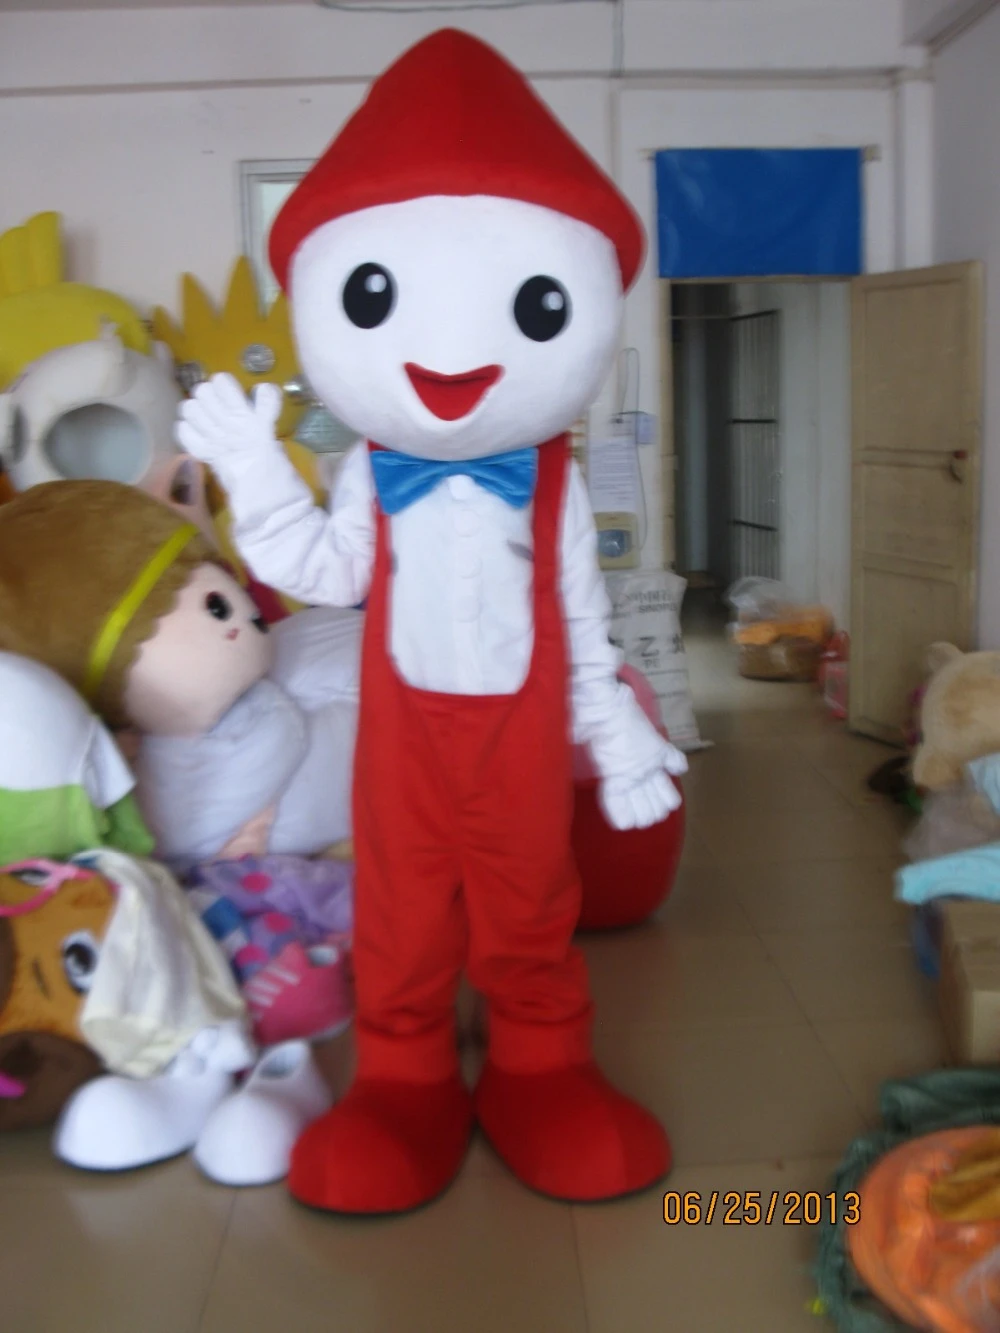 新しい到着17アダルト漫画のキャラクターかわいい赤い帽子男マスコット衣装仮装パーティー衣装 Mascot Costume Party Costumecostume Fancy Aliexpress